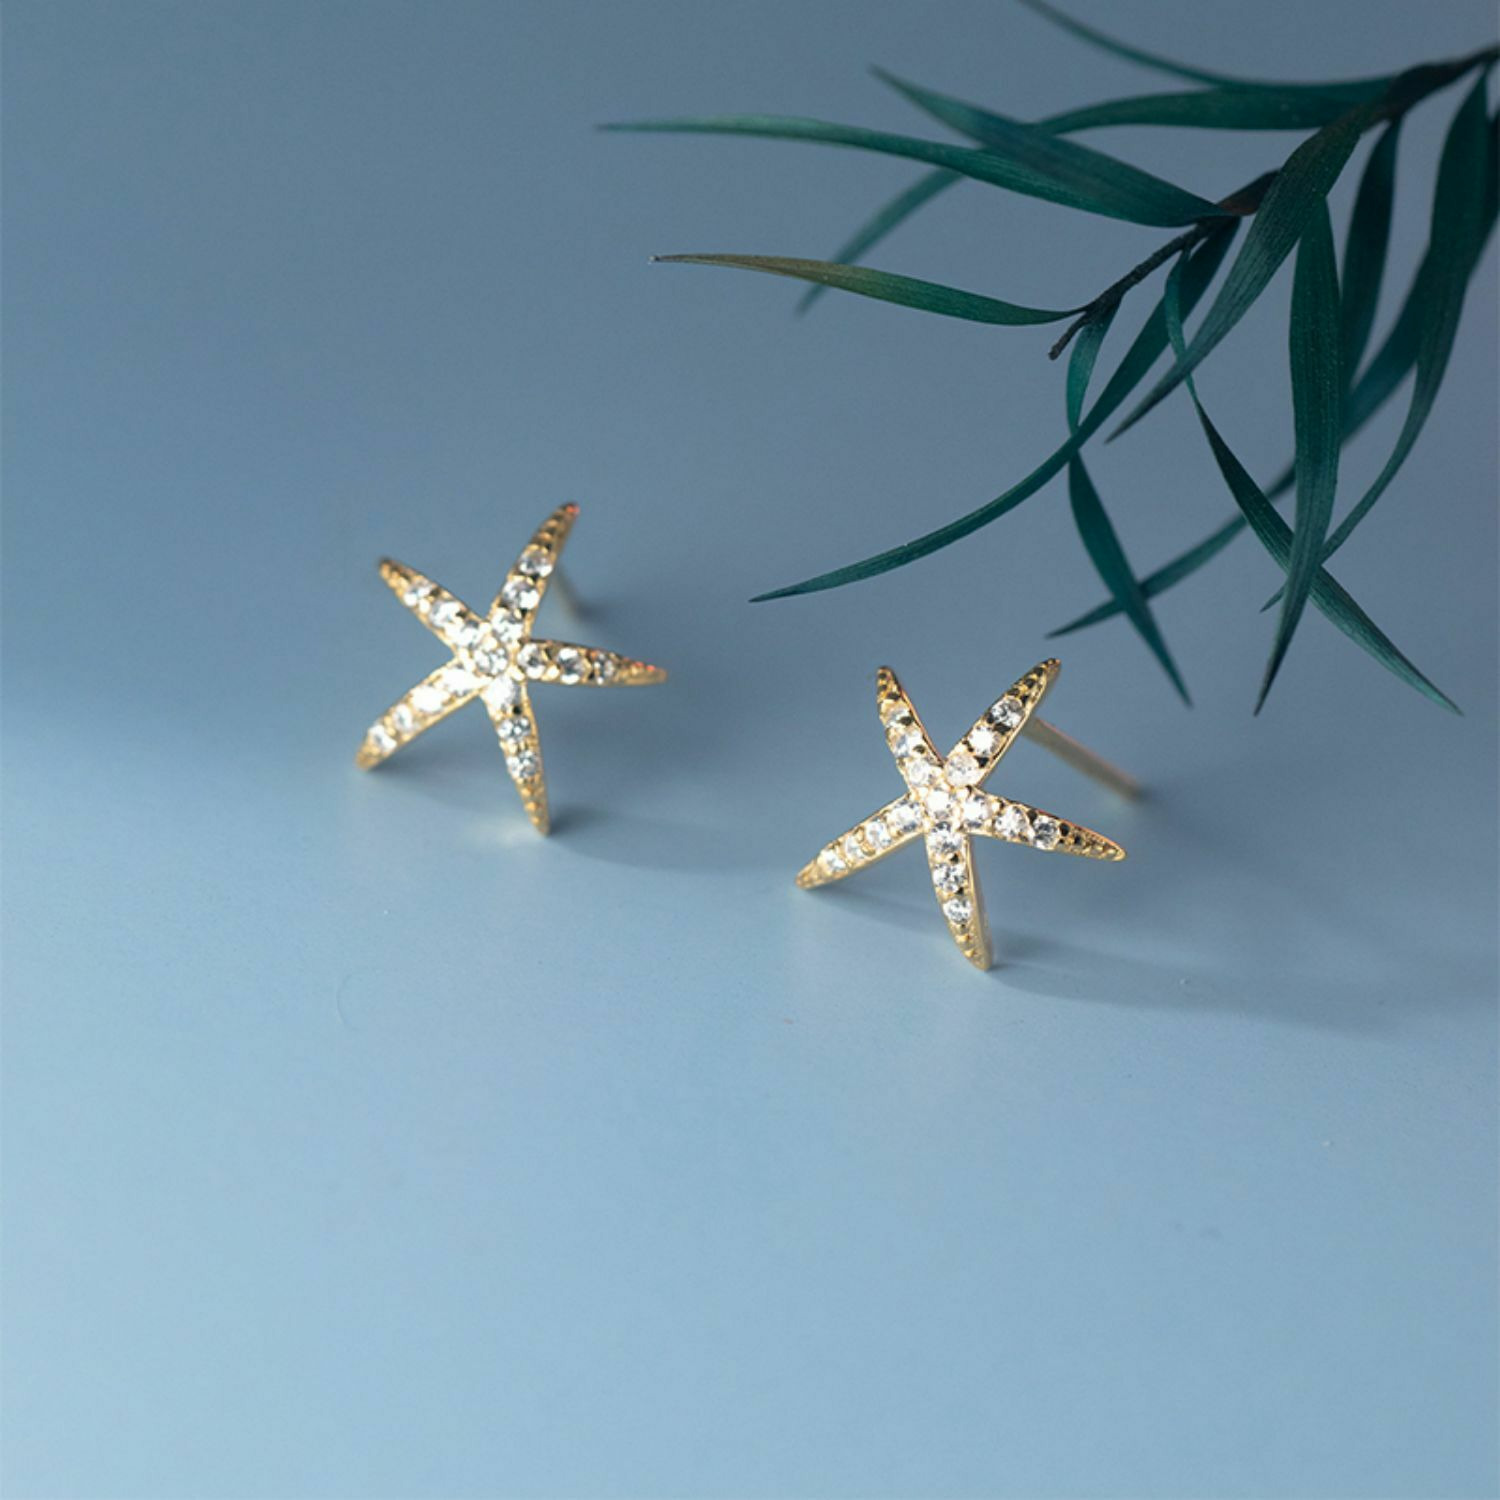 Cercei din argint Golden Sea Star image0